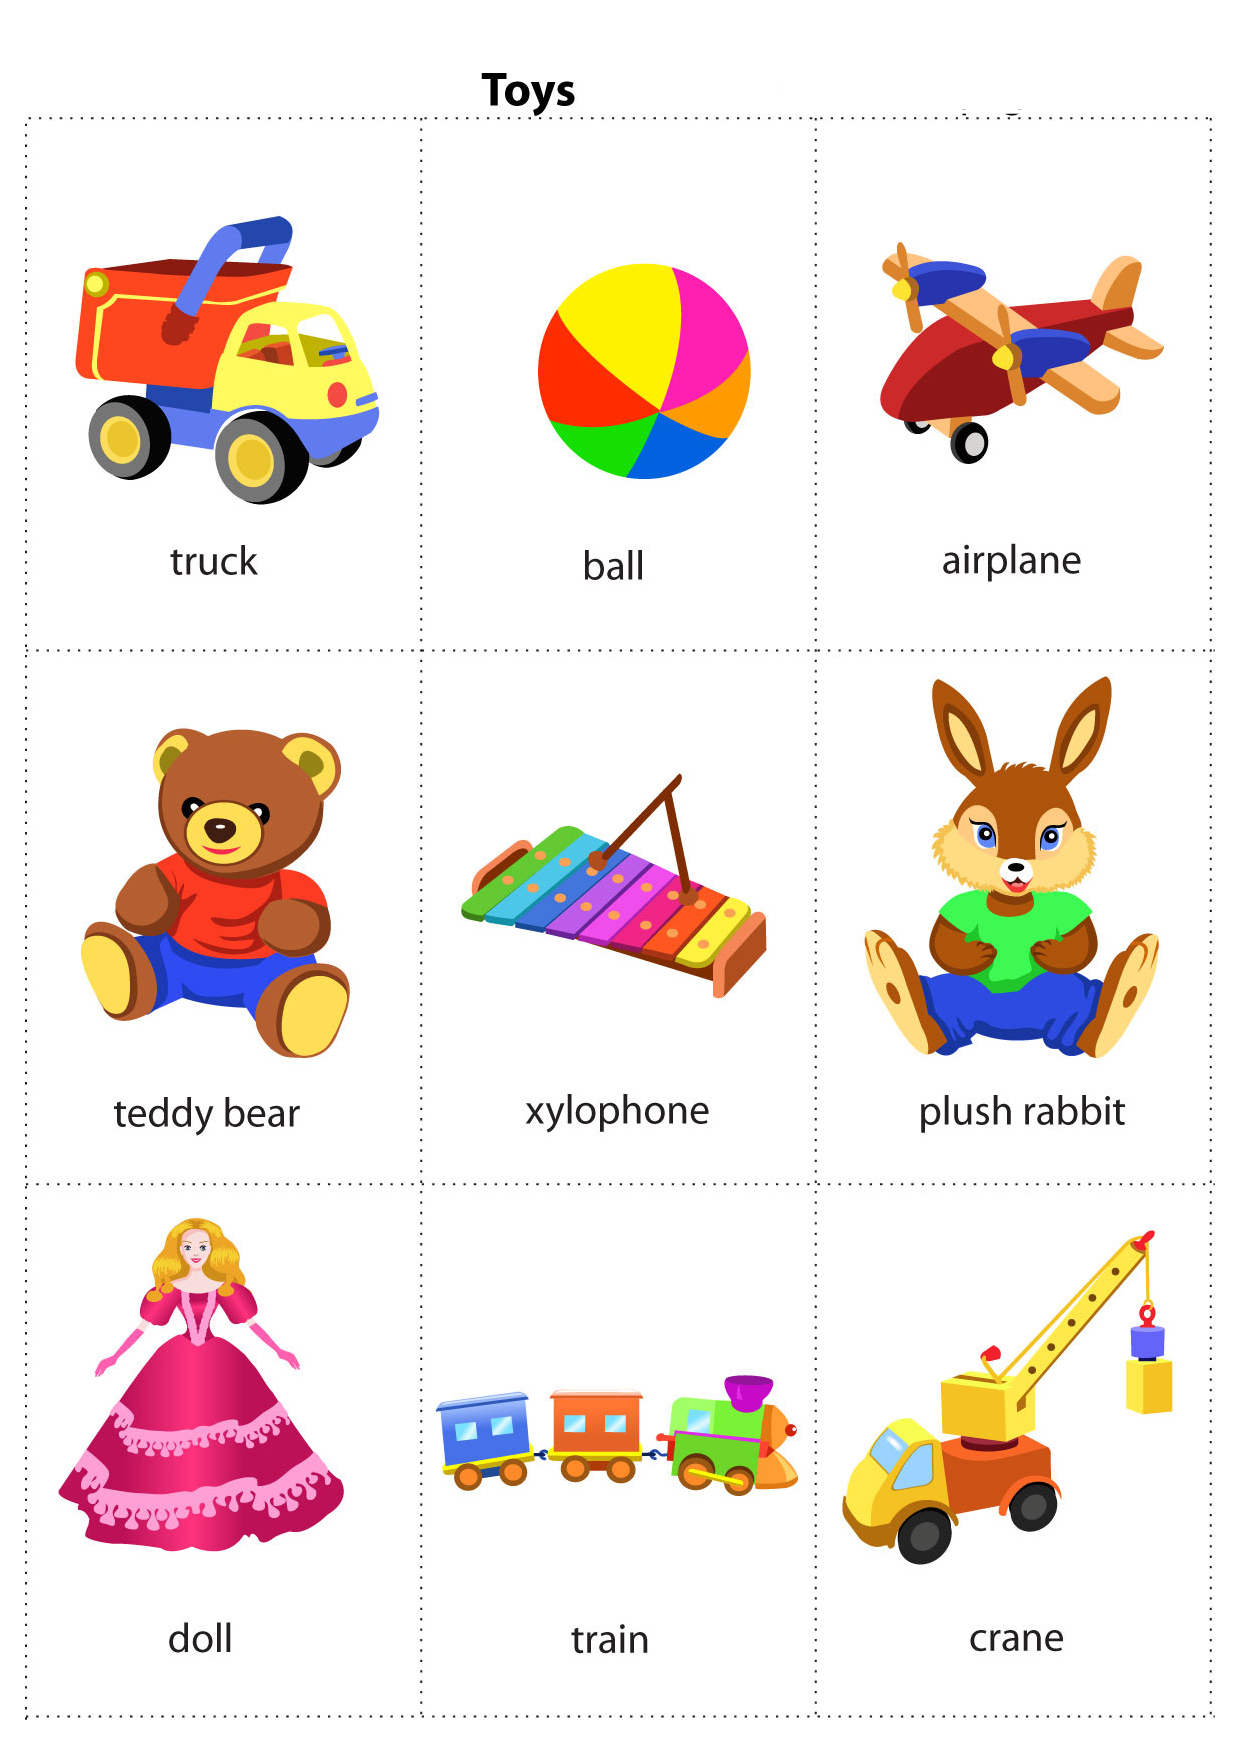 Изображения игрушек на английском в хорошем качестве для скачивания